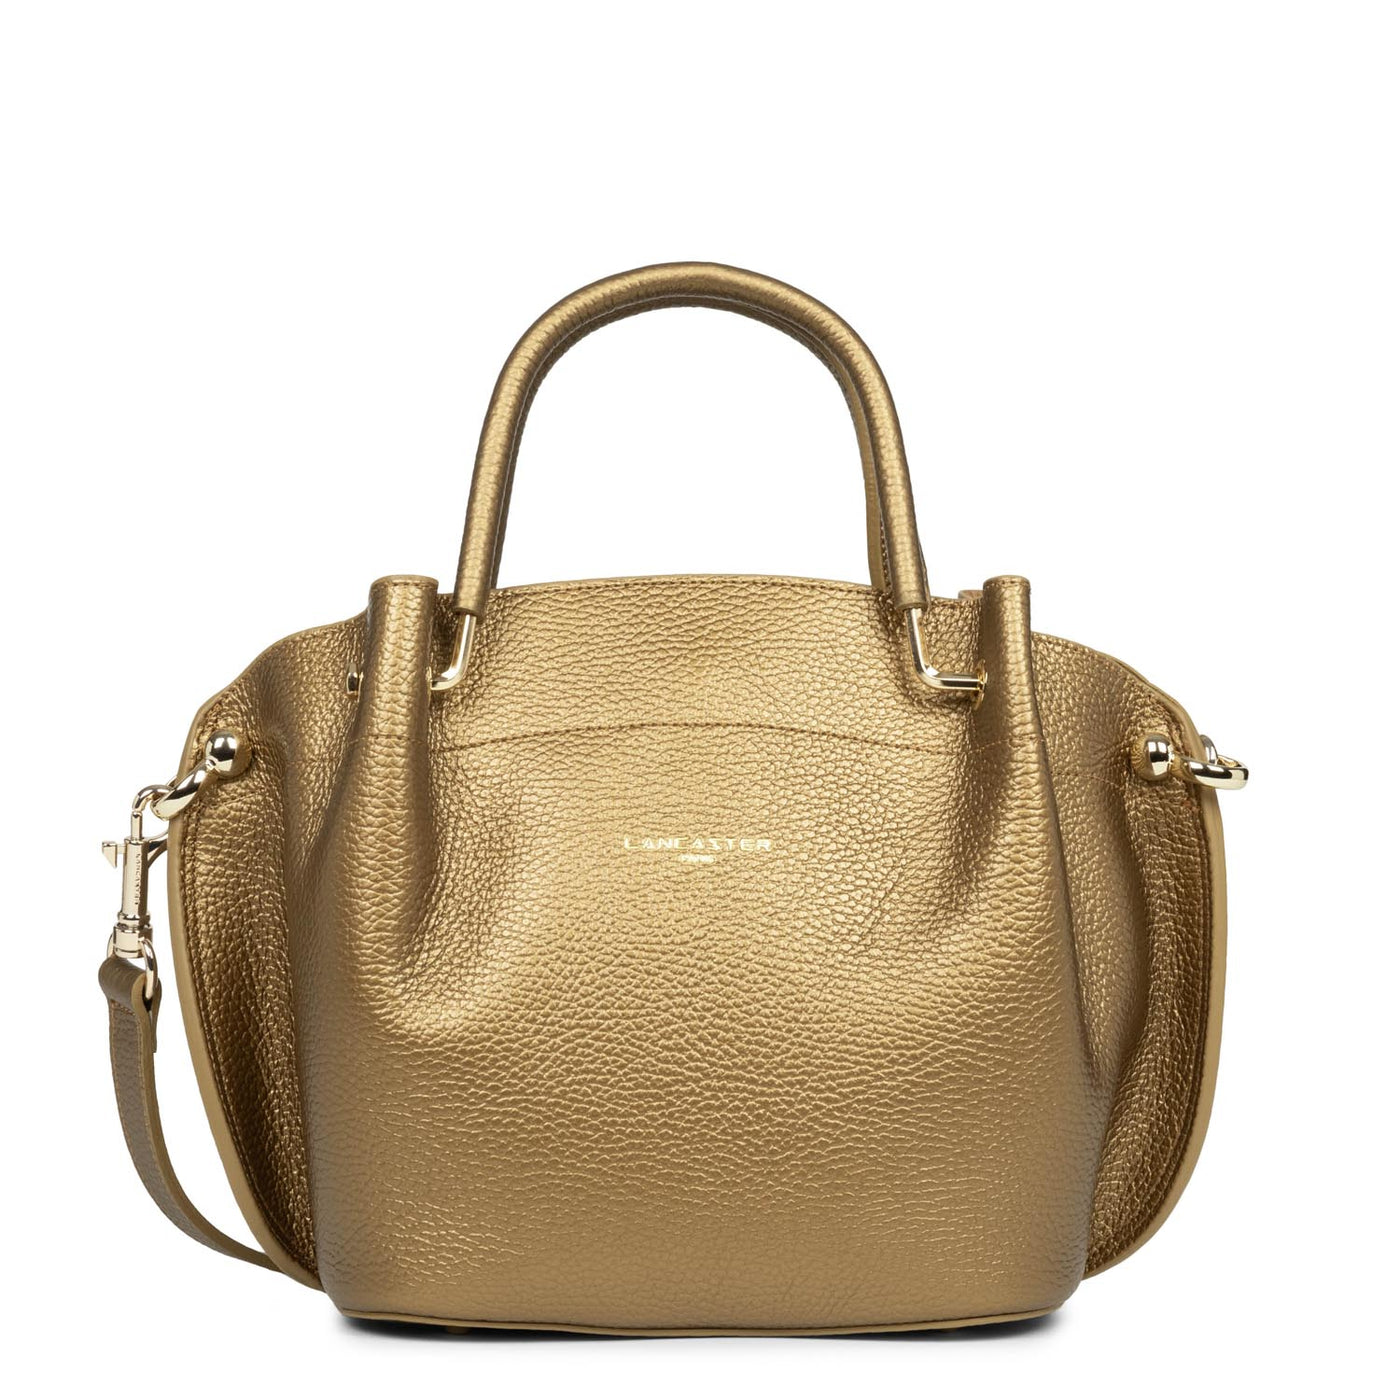 m handbag - foulonné double #couleur_gold-antic-in-naturel